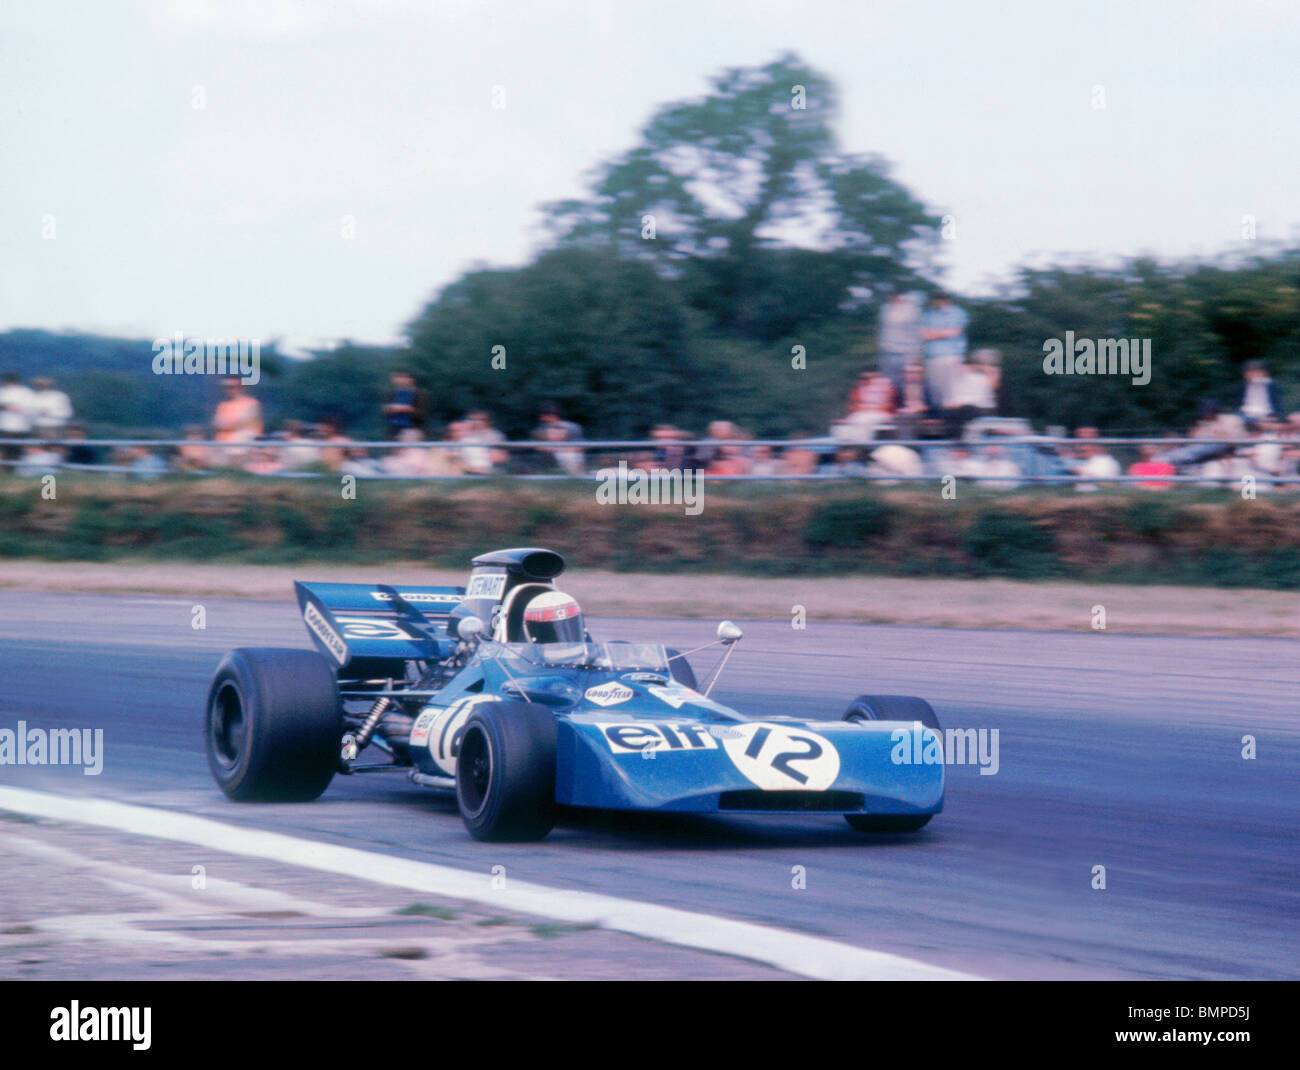 Tyrrell 003 angetrieben von Jackie Stewart beim britischen Grand Prix 1971, Silverstone. Stockfoto